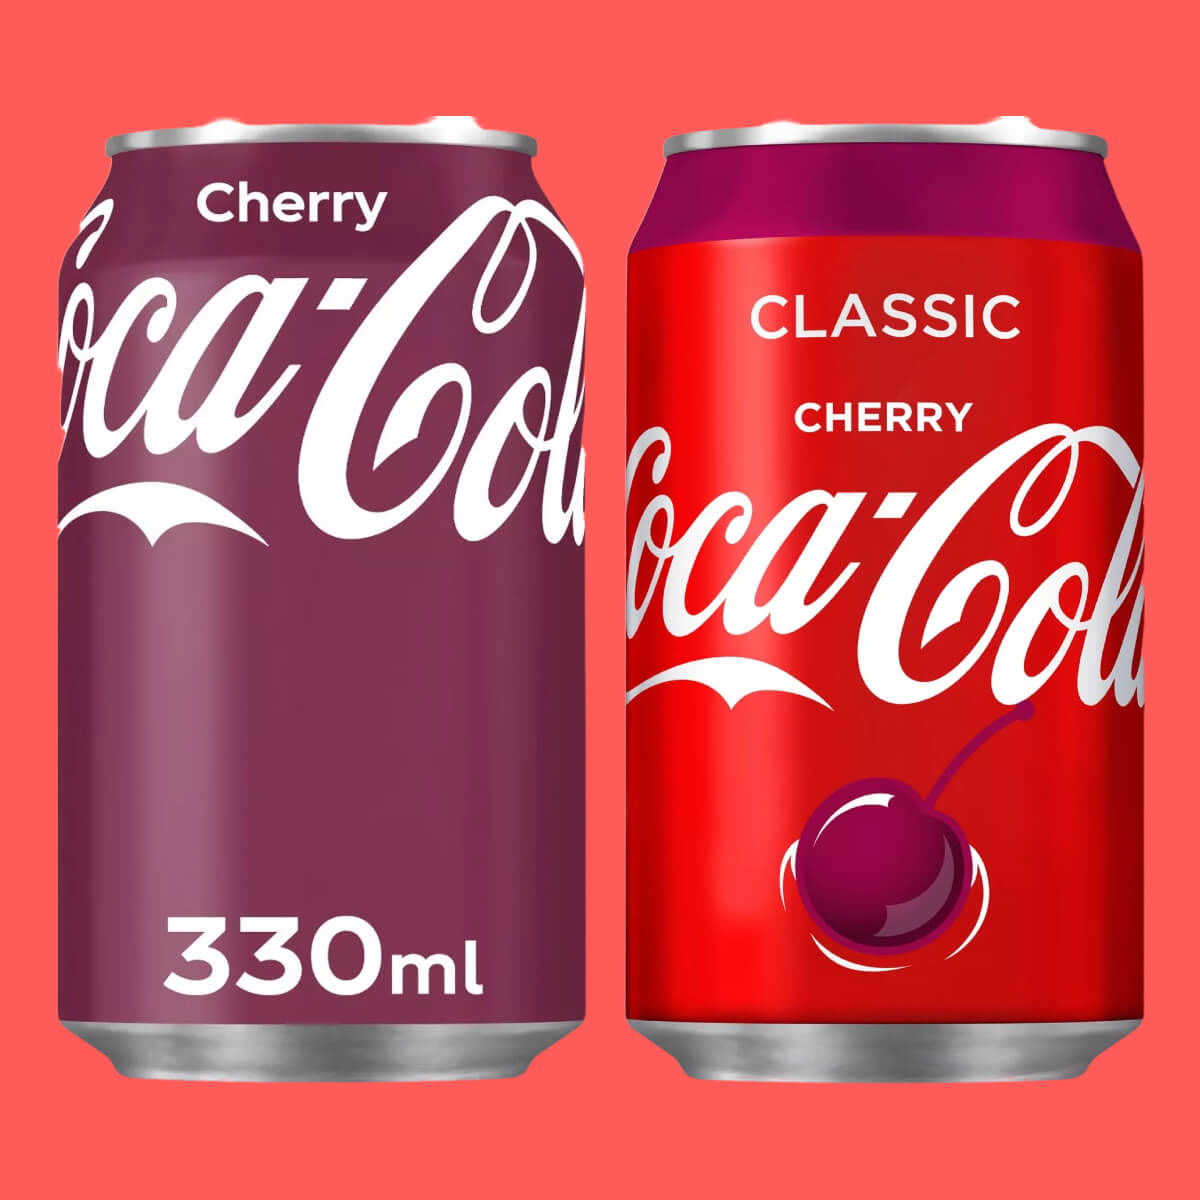 Cherry Coca-Cola: A Pop Culture Phenomenon